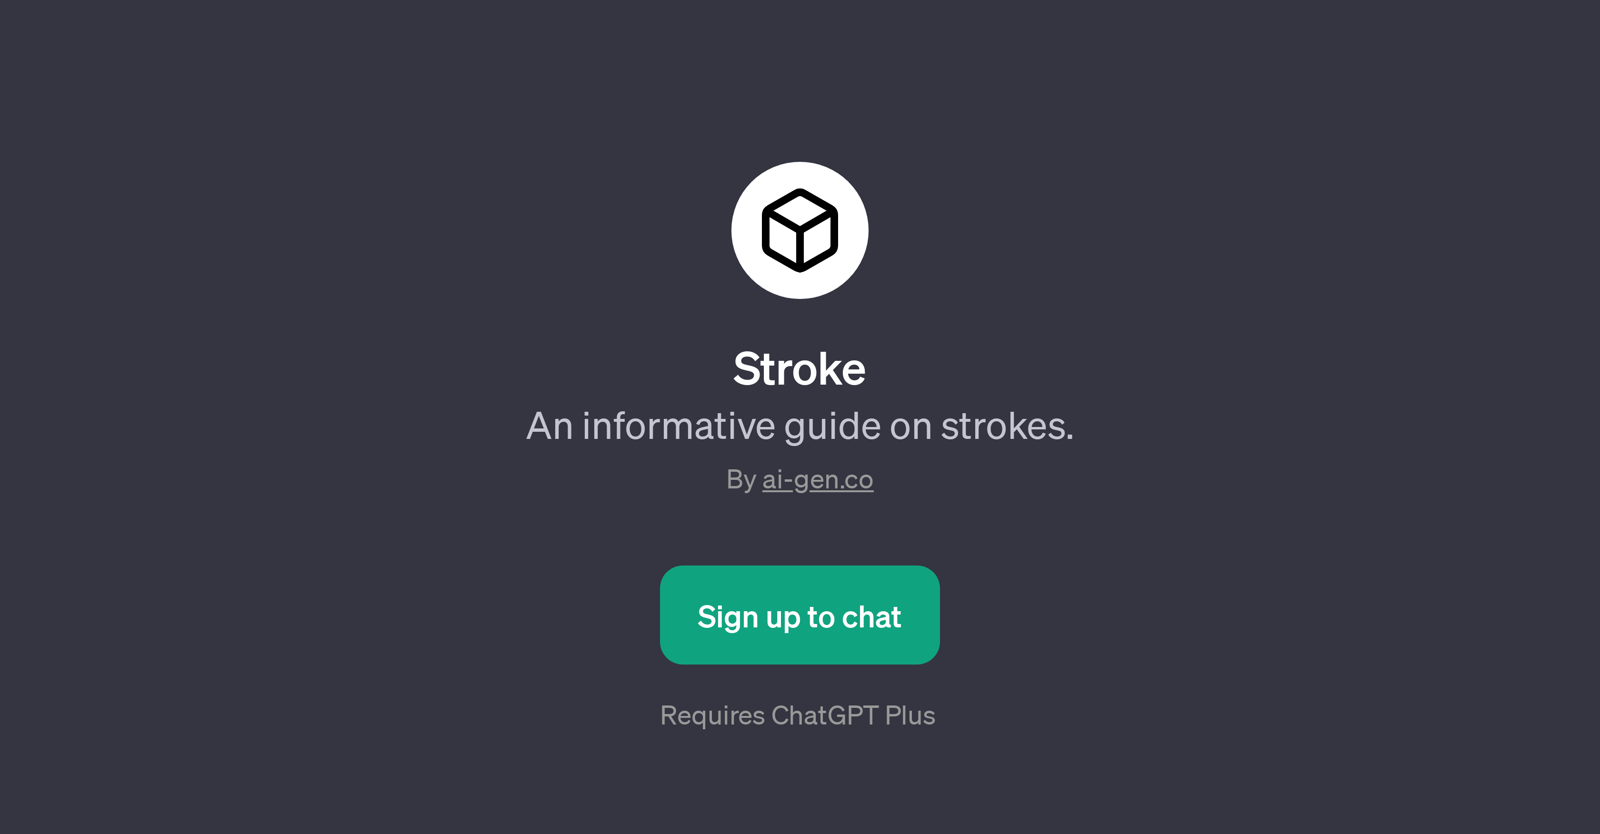 Stroke website